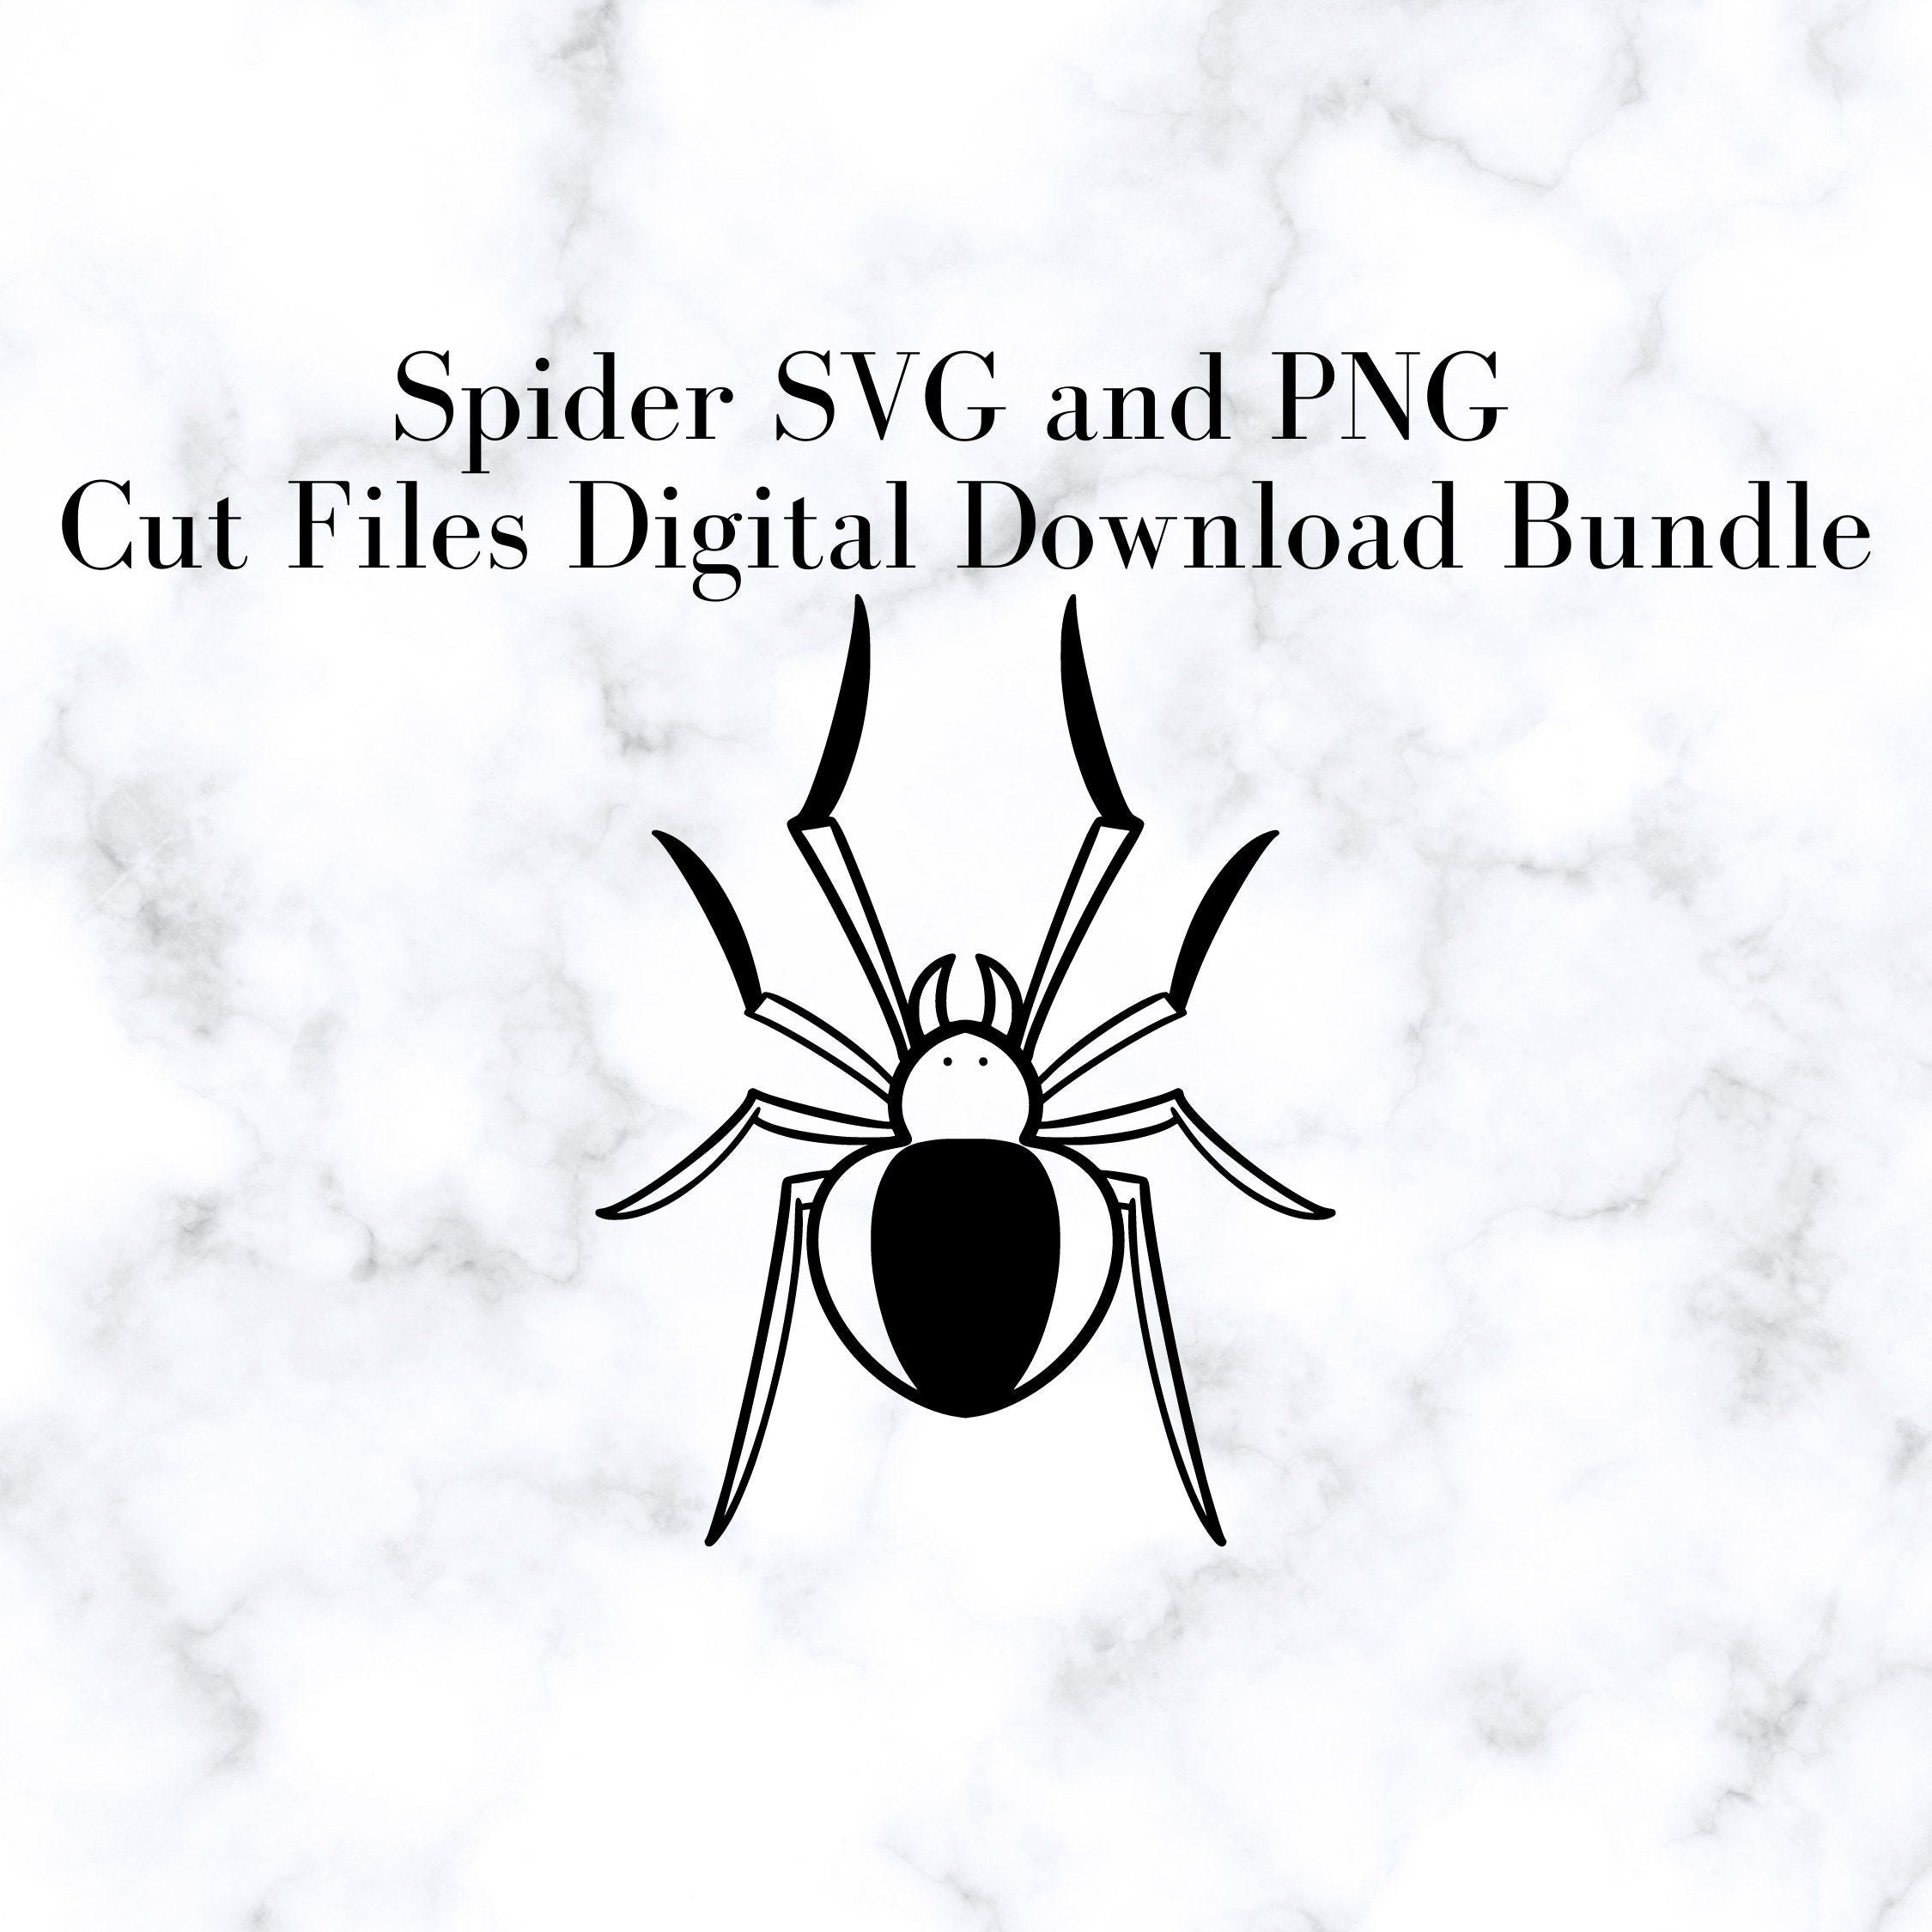 Spider SVG and PNG Cut Files, Digital Download Bundle